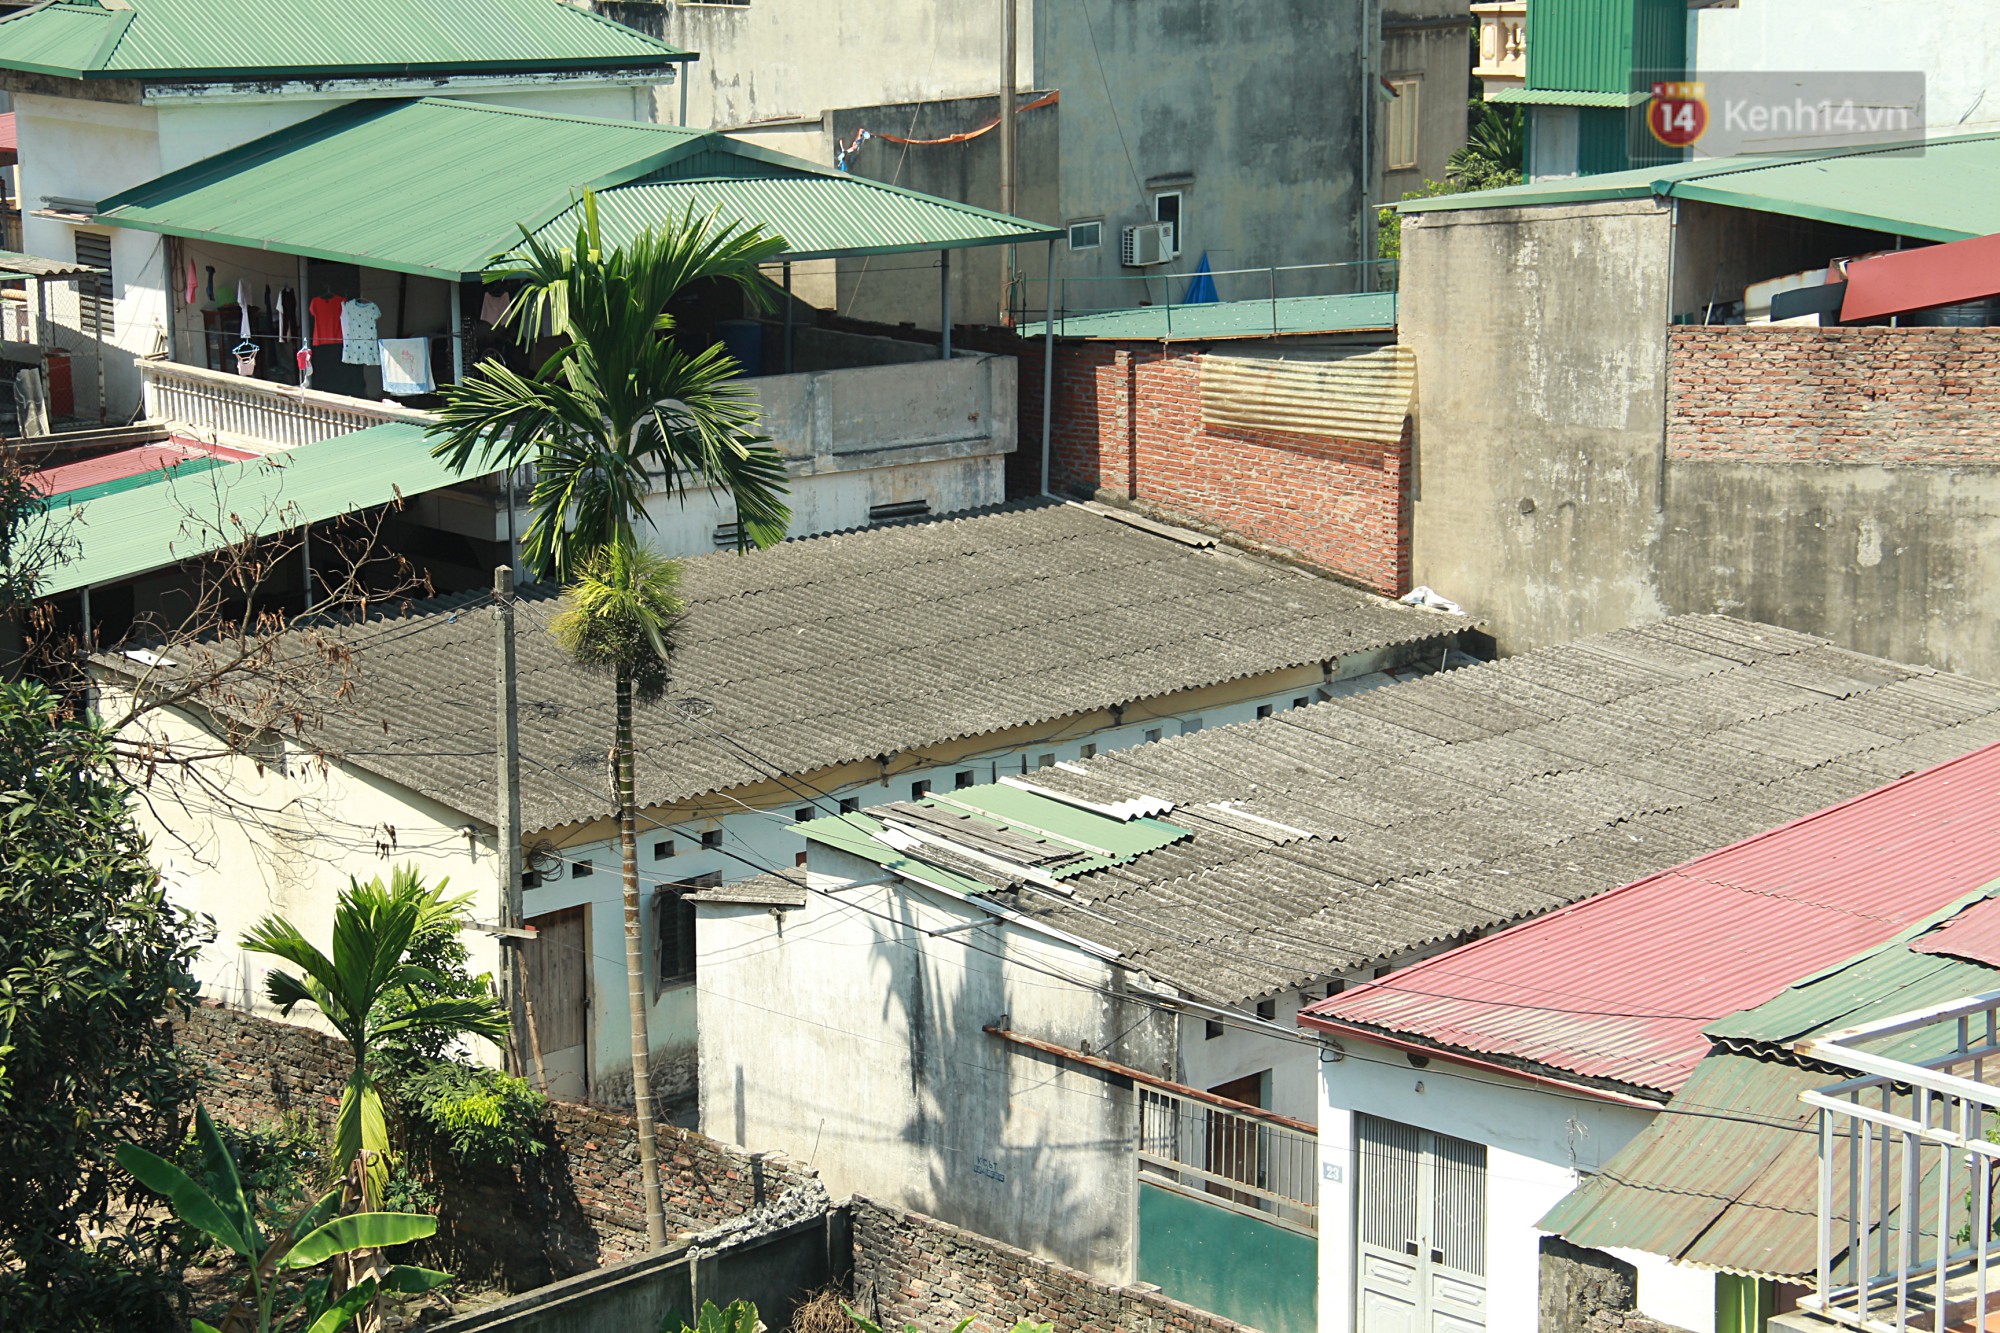 Dân xóm nghèo oằn mình trong những căn phòng trọ lợp mái tôn gần 50 độ C giữa lòng Hà Nội: Cái nóng hầm hập như muốn luộc chín người-1